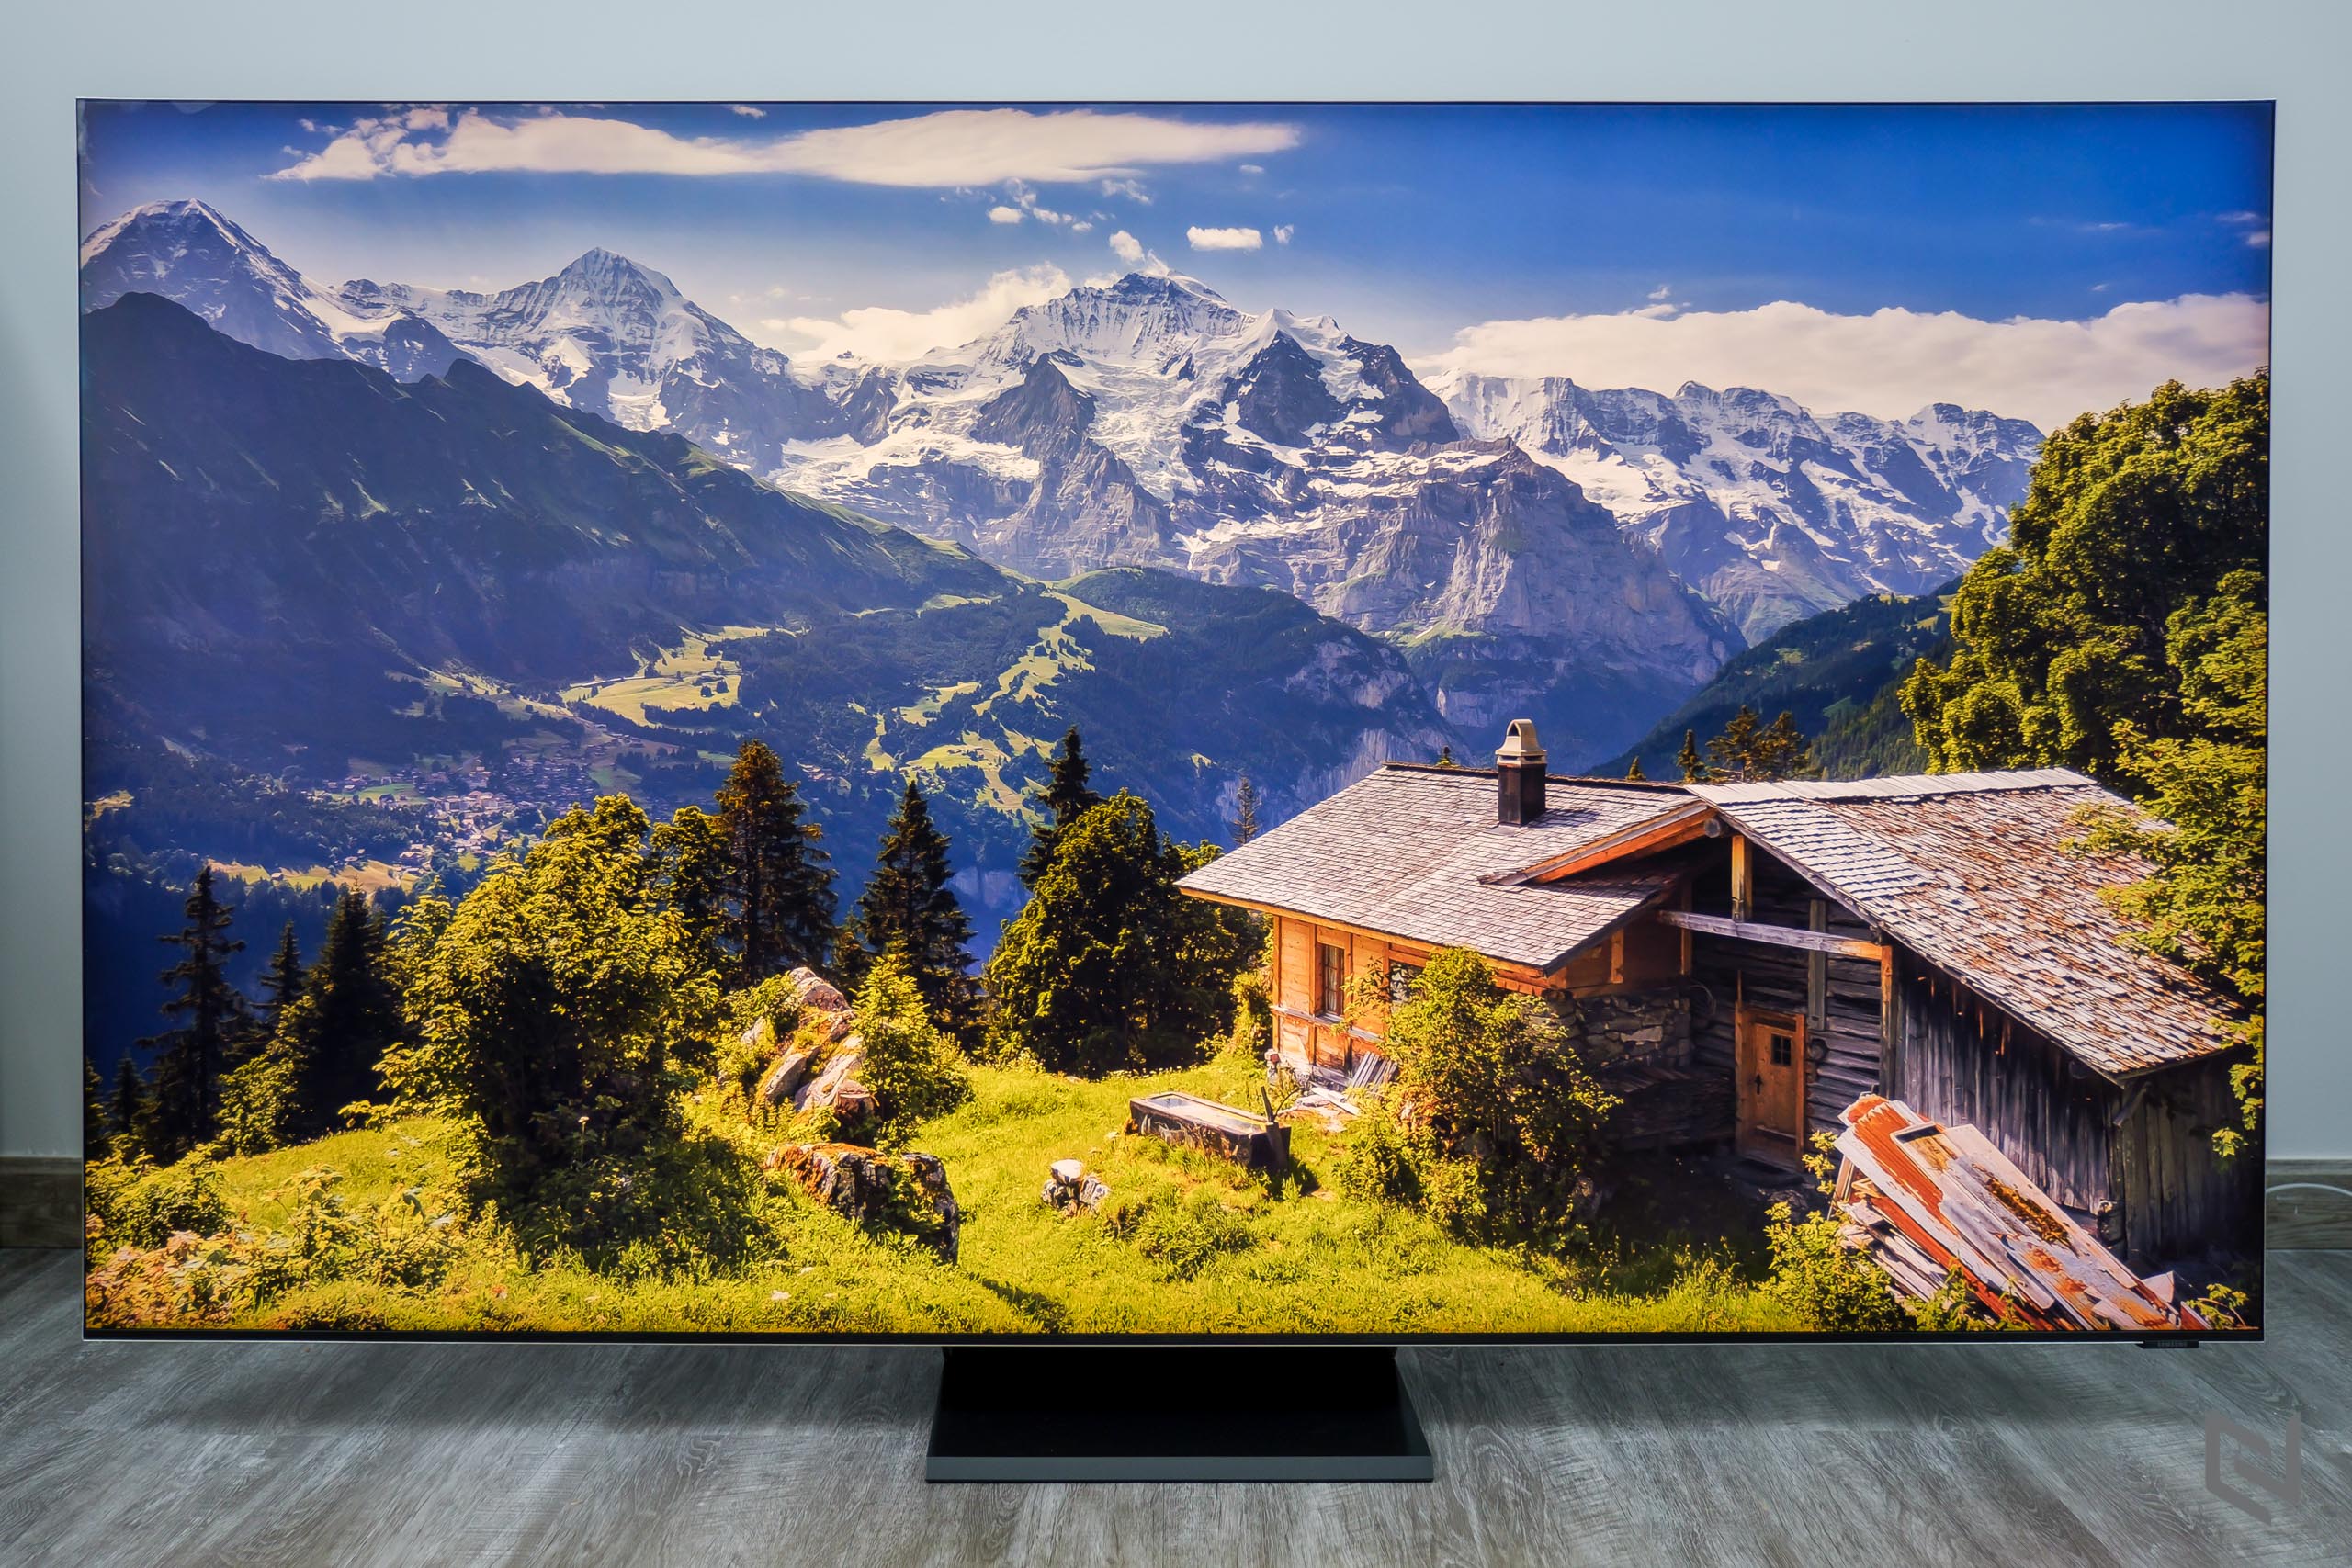 Đây là cách Samsung đảm bảo cho chất lượng từng chiếc TV của mình